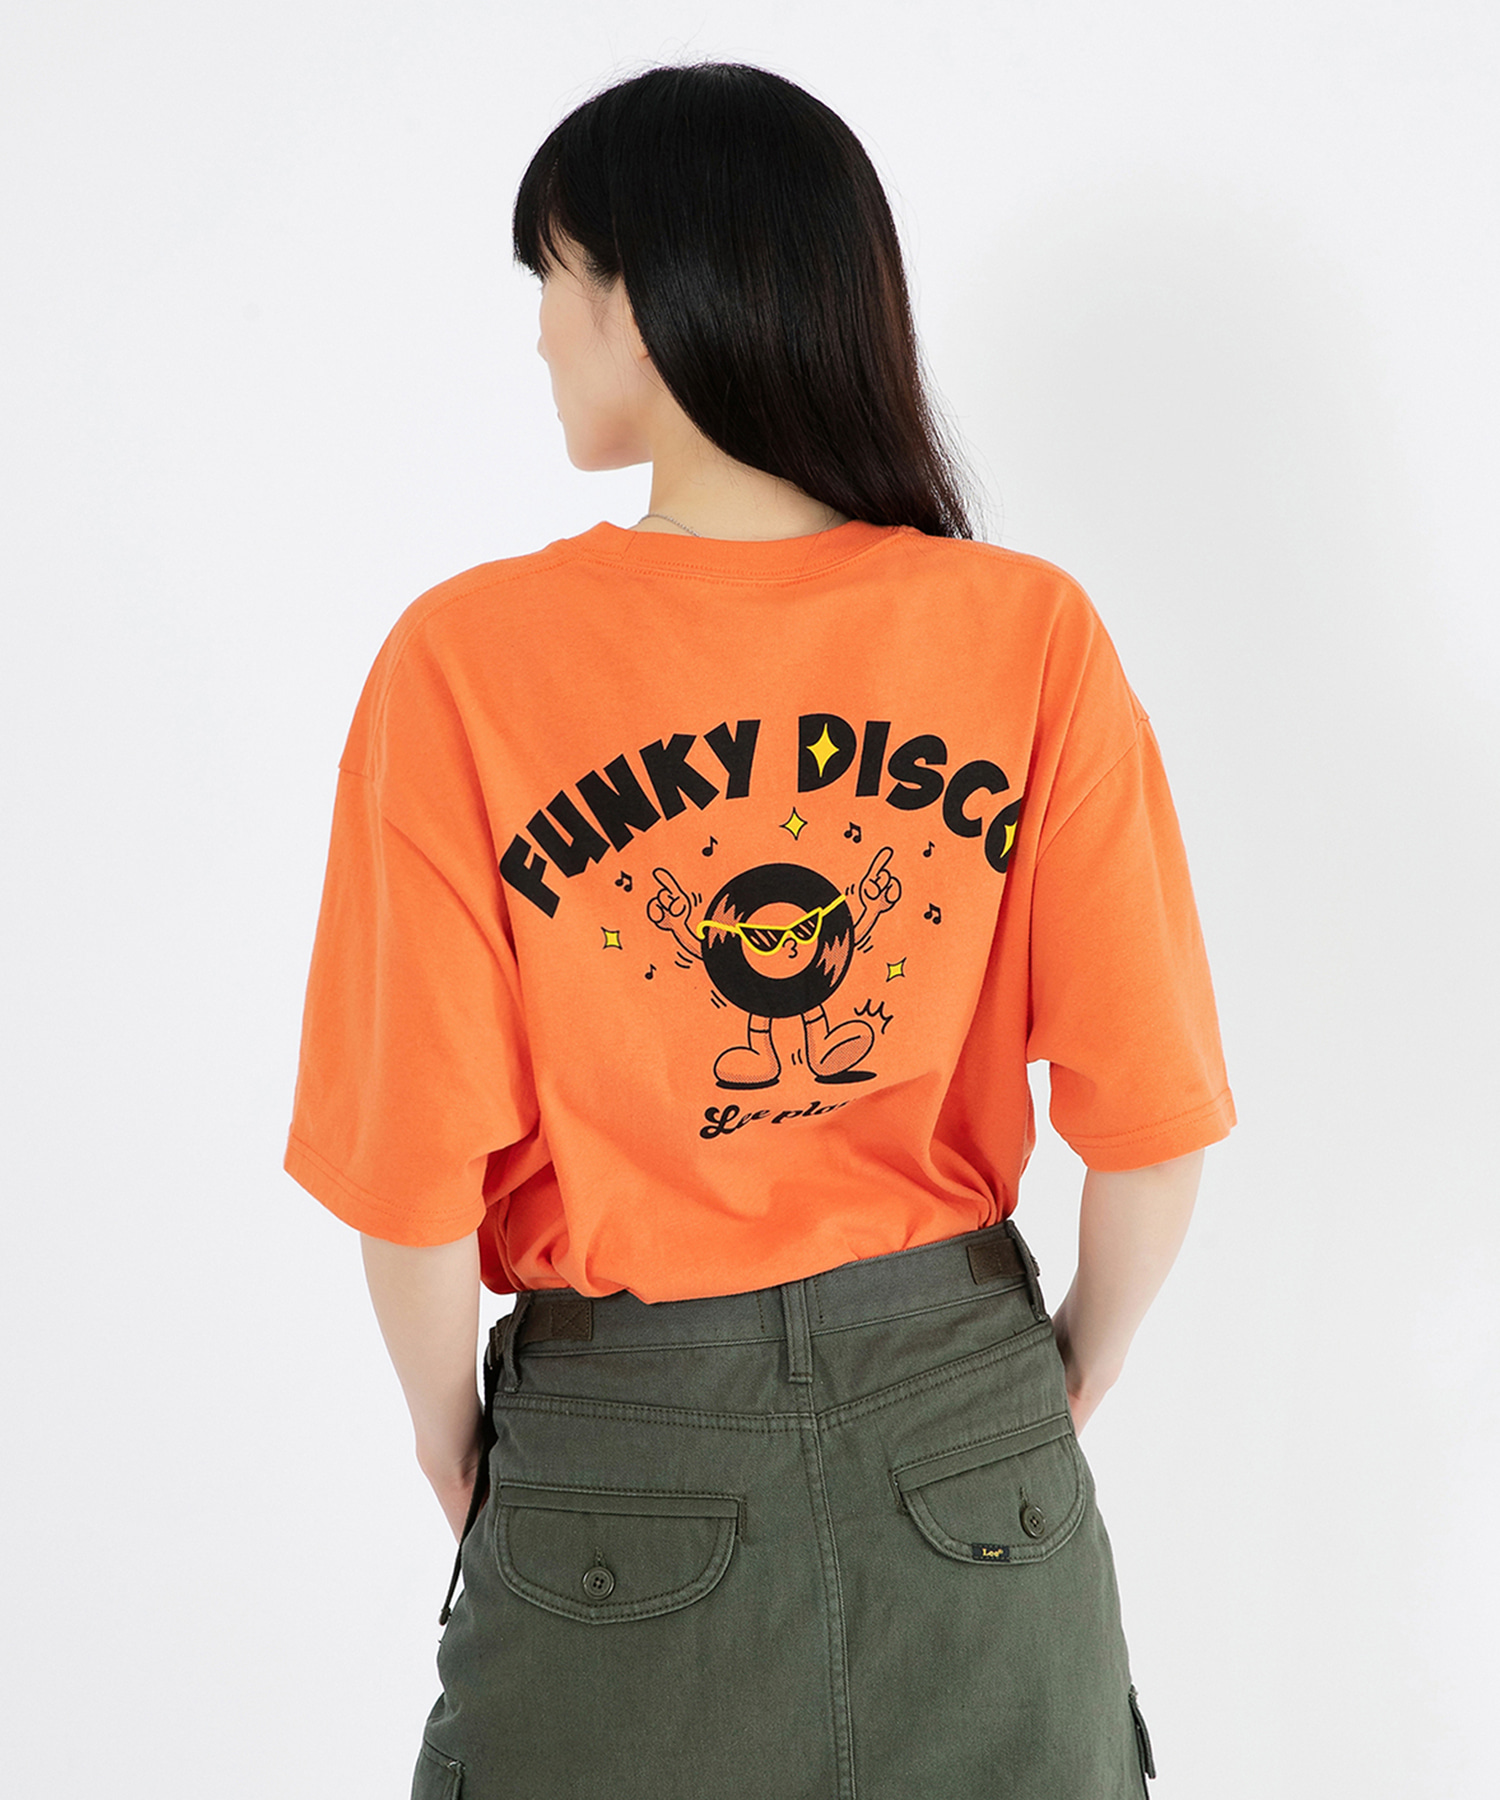 펑키 디스코 그래픽 티셔츠 오렌지